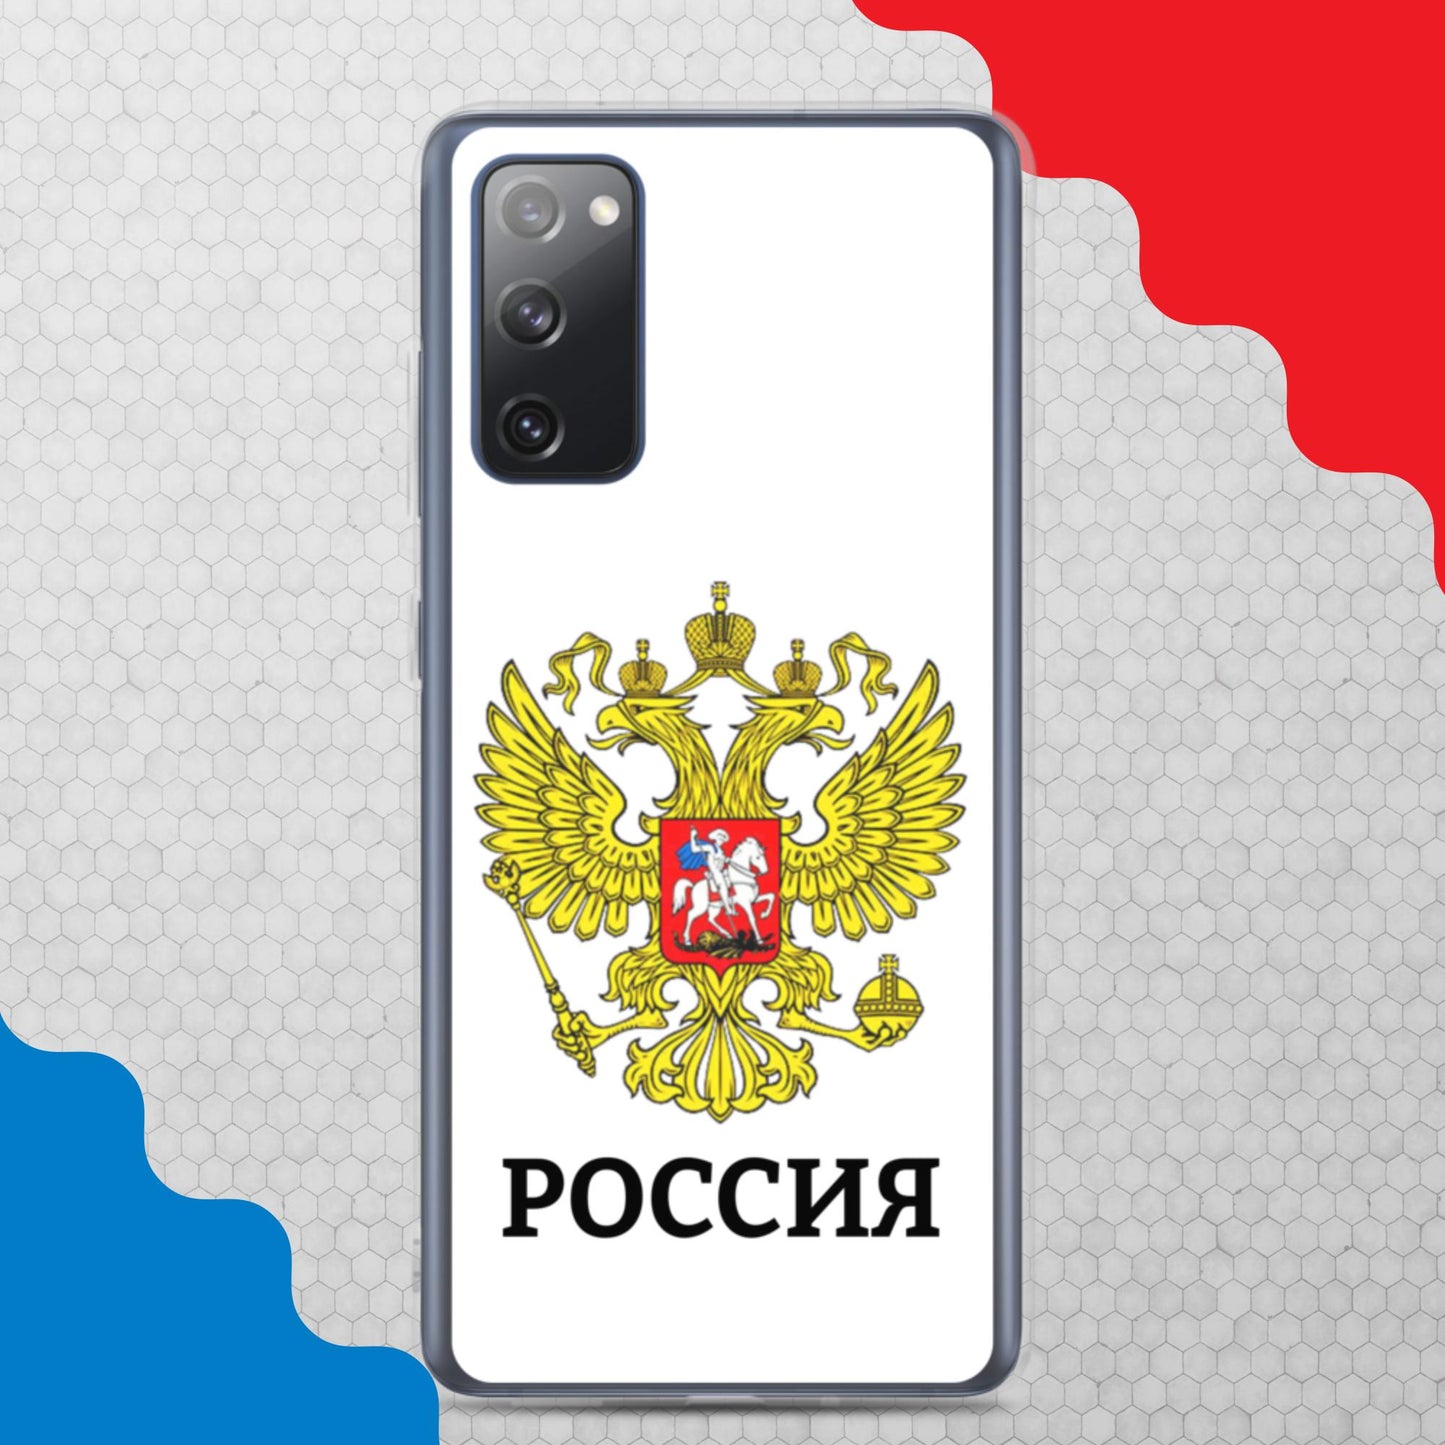 Samsung-Handyhülle mit Russland-Wappen in weiß (alle Modelle)